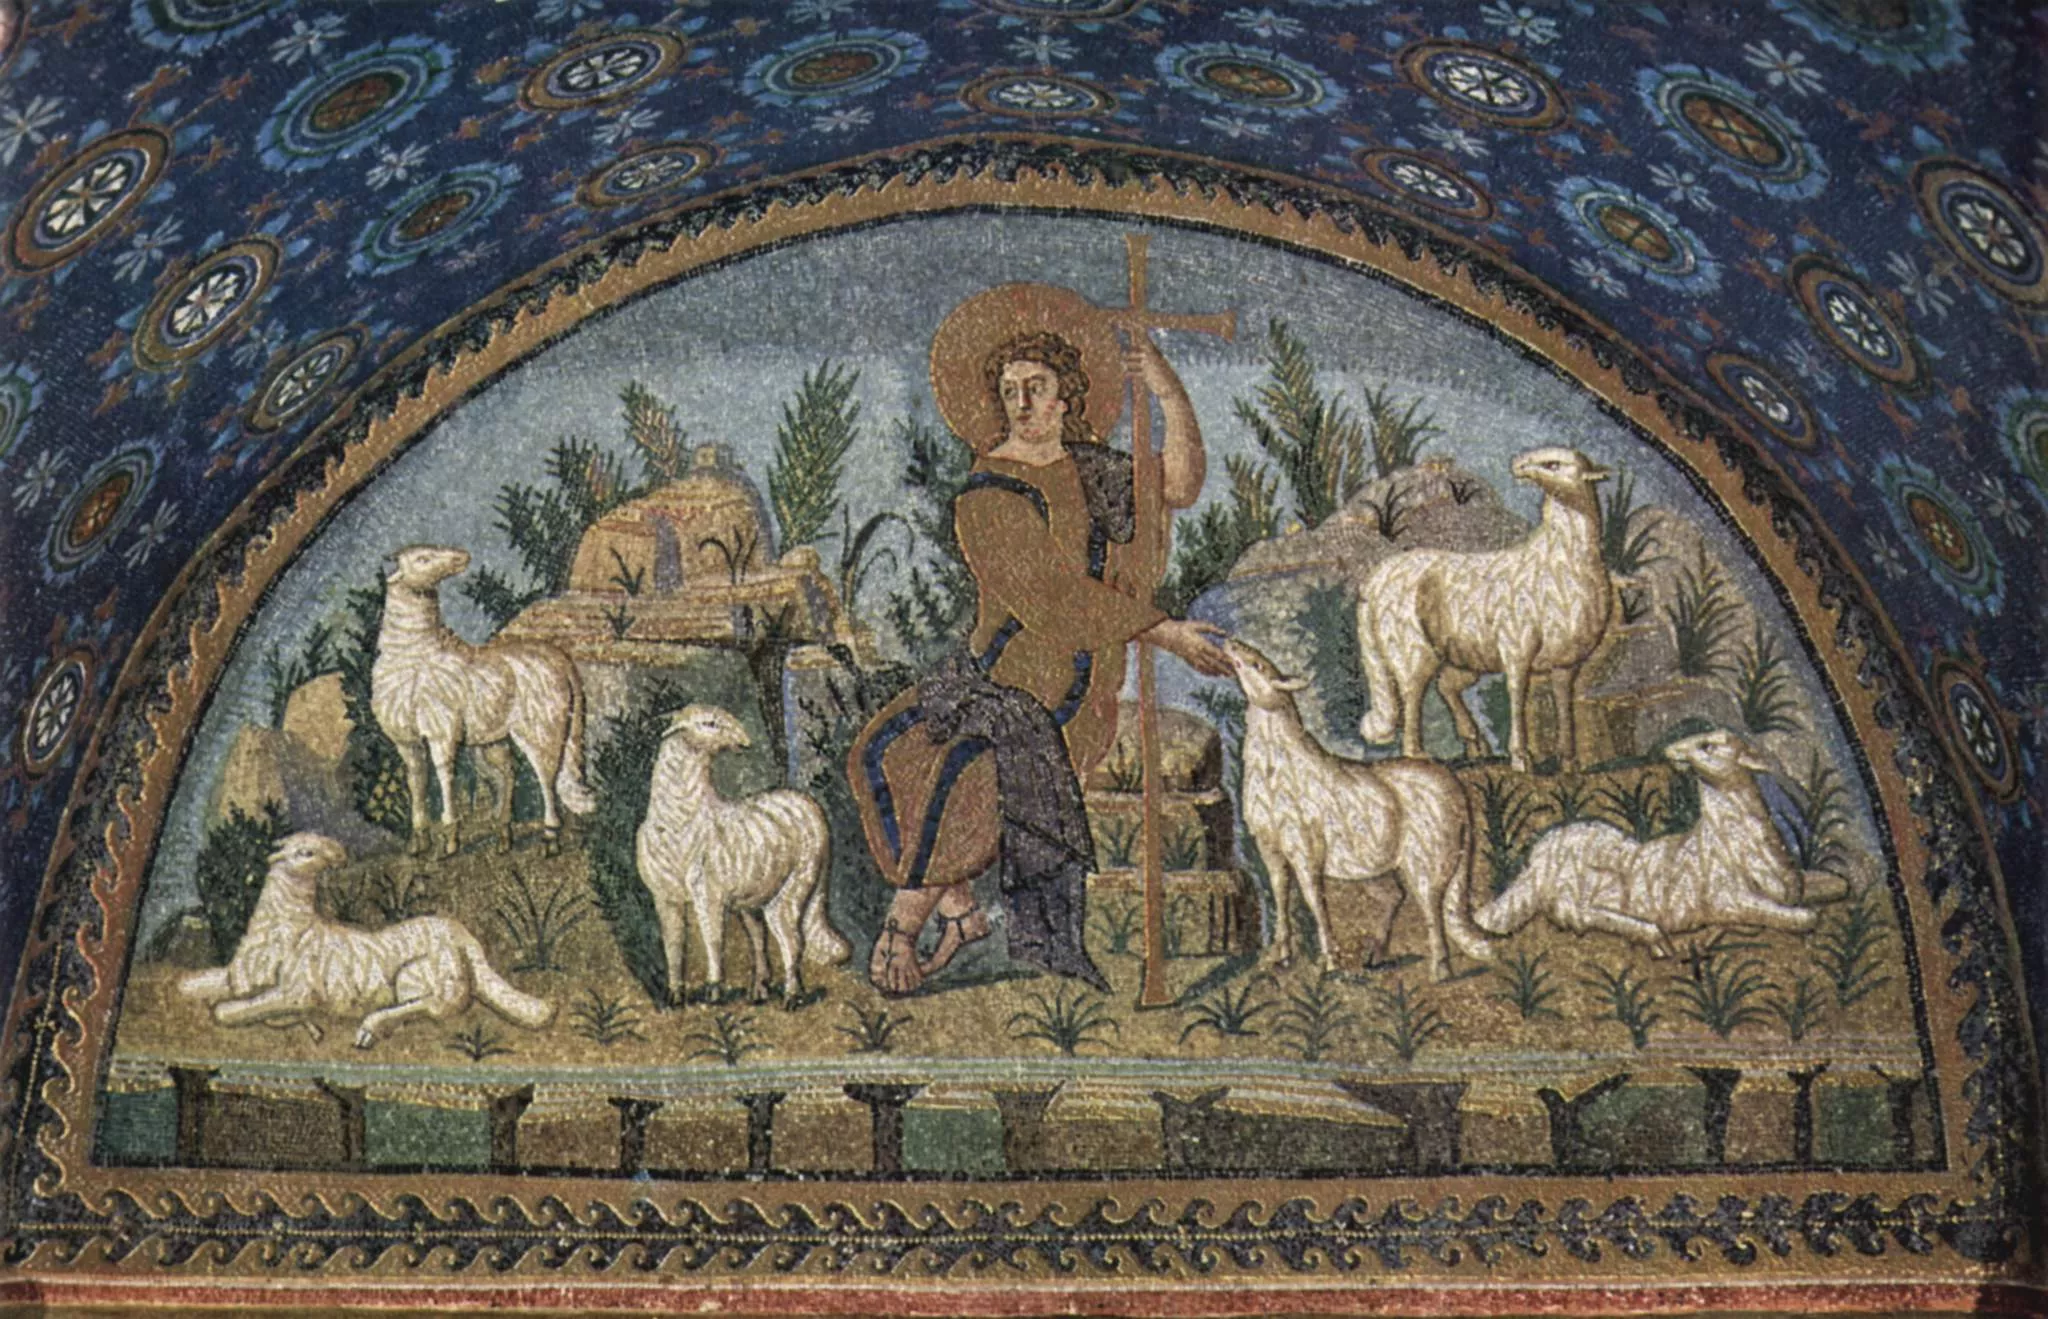 El mausoleu de Gal·la Placídia a Ravenna (Itàlia) és conegut pels mosaics que el decoren